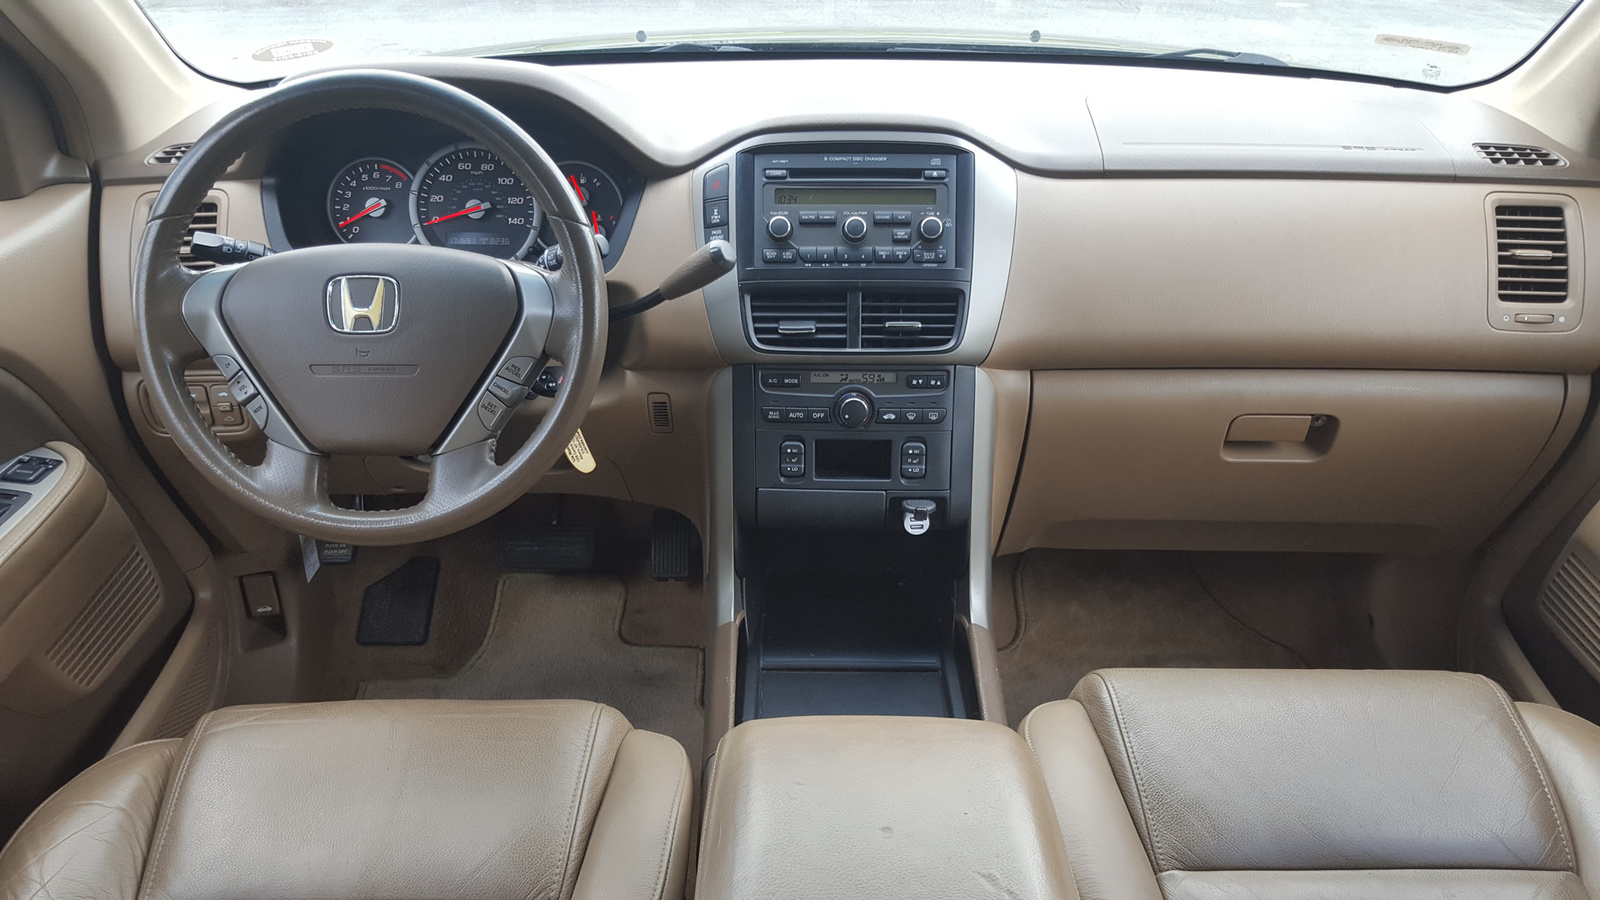 2008 Honda Pilot: Prices, Reviews & Pictures - CarGurus